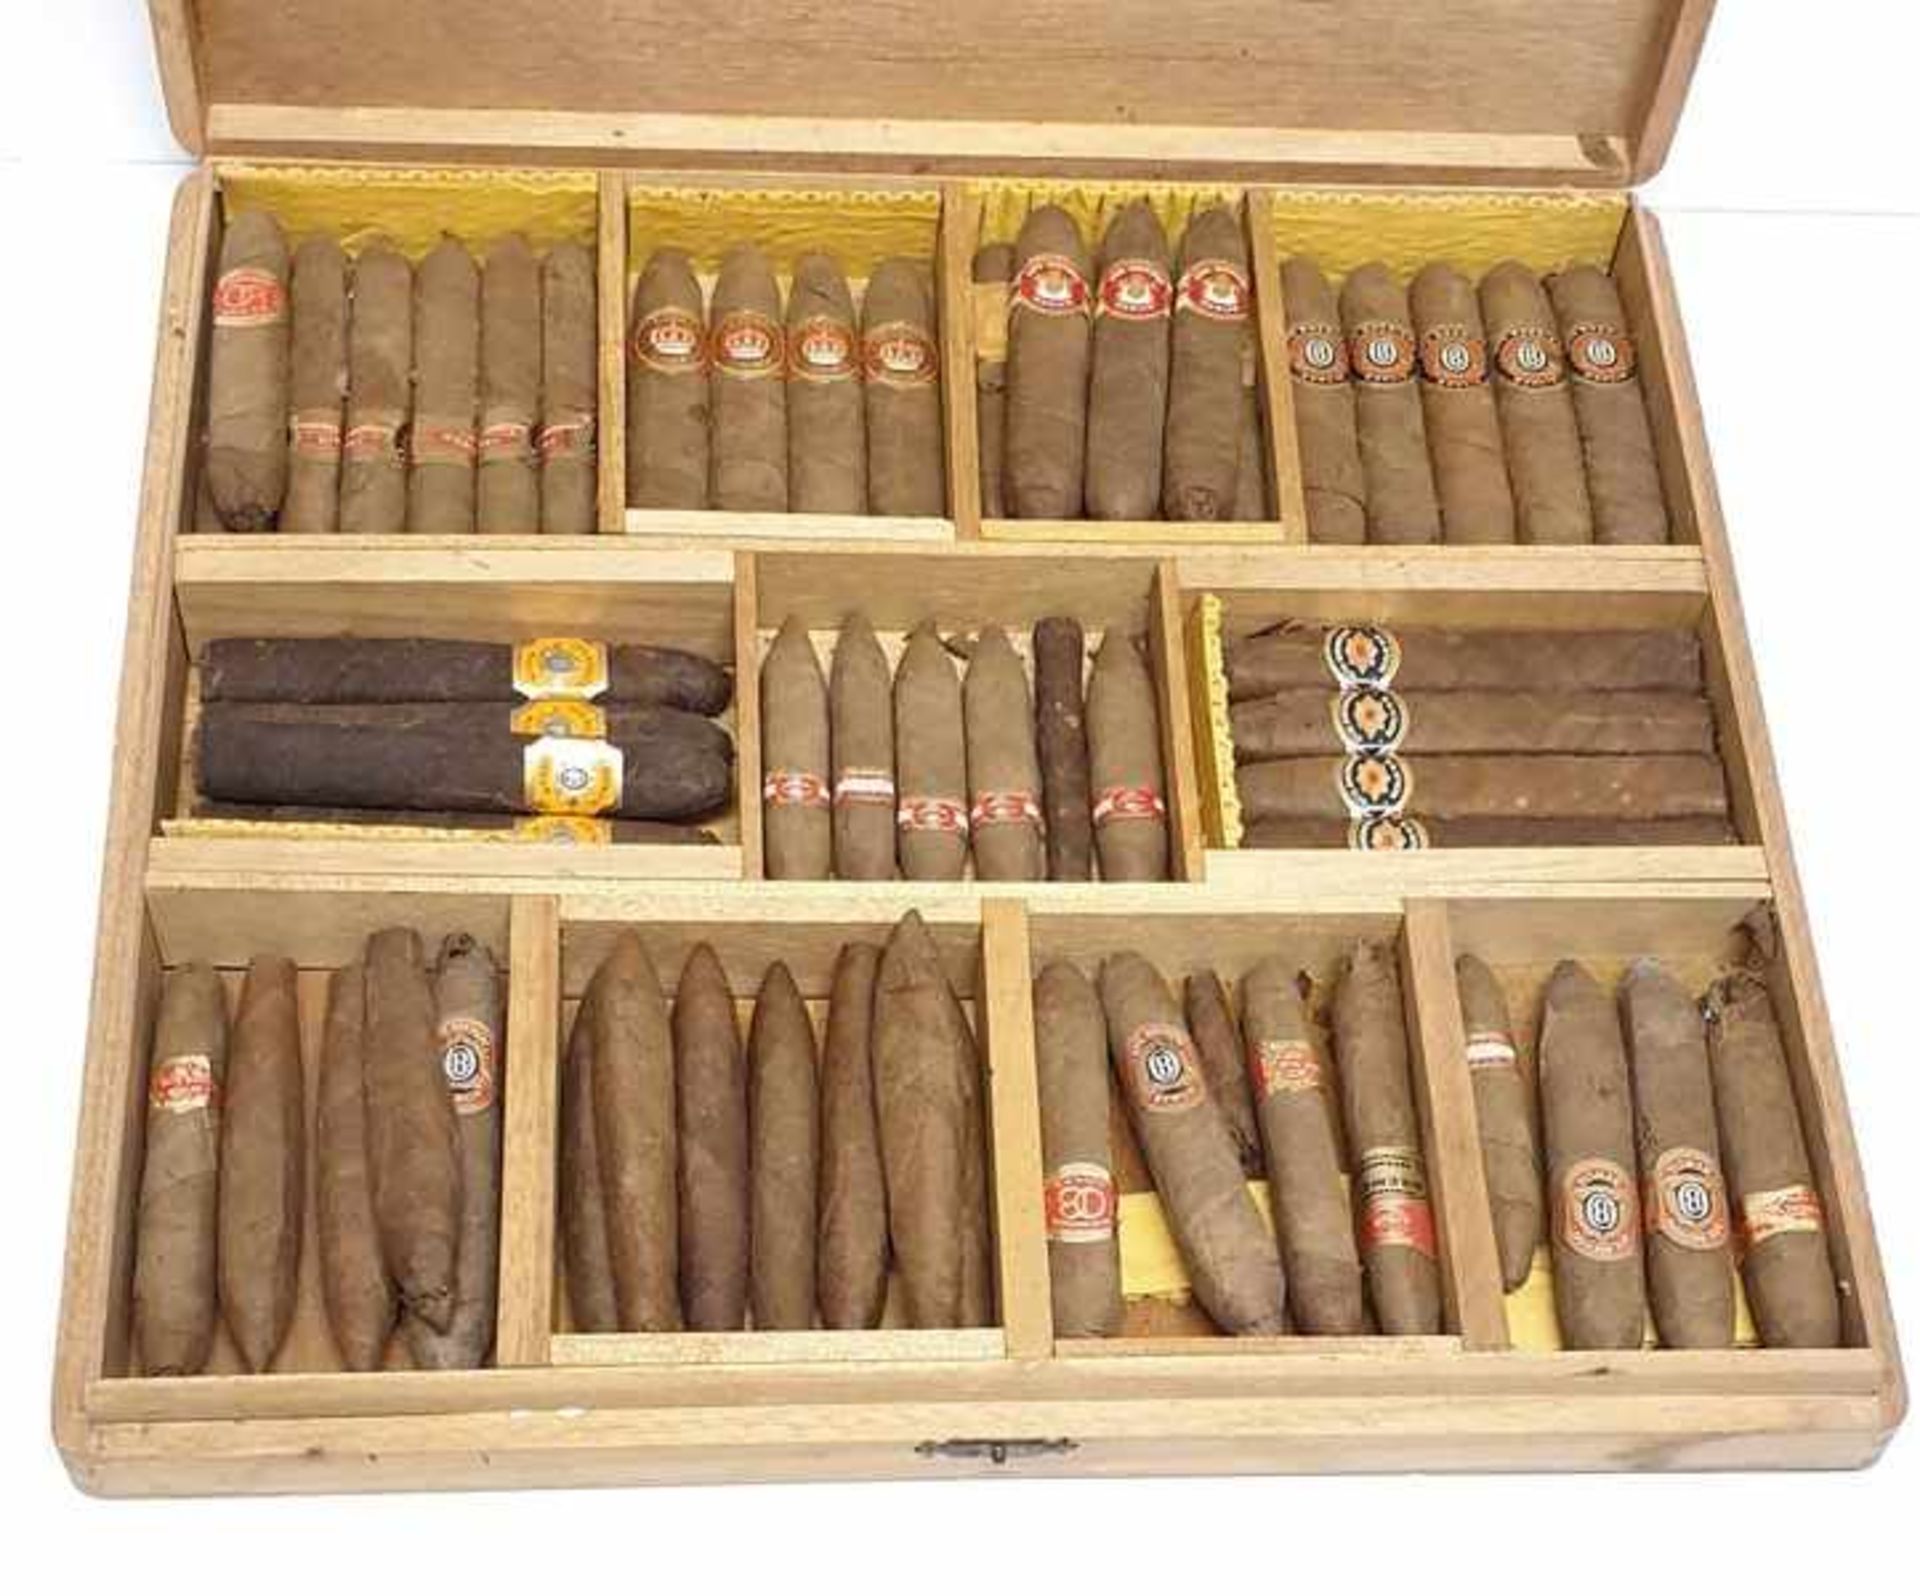 Zigarrenkiste von Otto Boenicke , 40/50er Jahre , gefüllt mit 57 Stück Zigarren, Größe Kiste: - Image 2 of 2